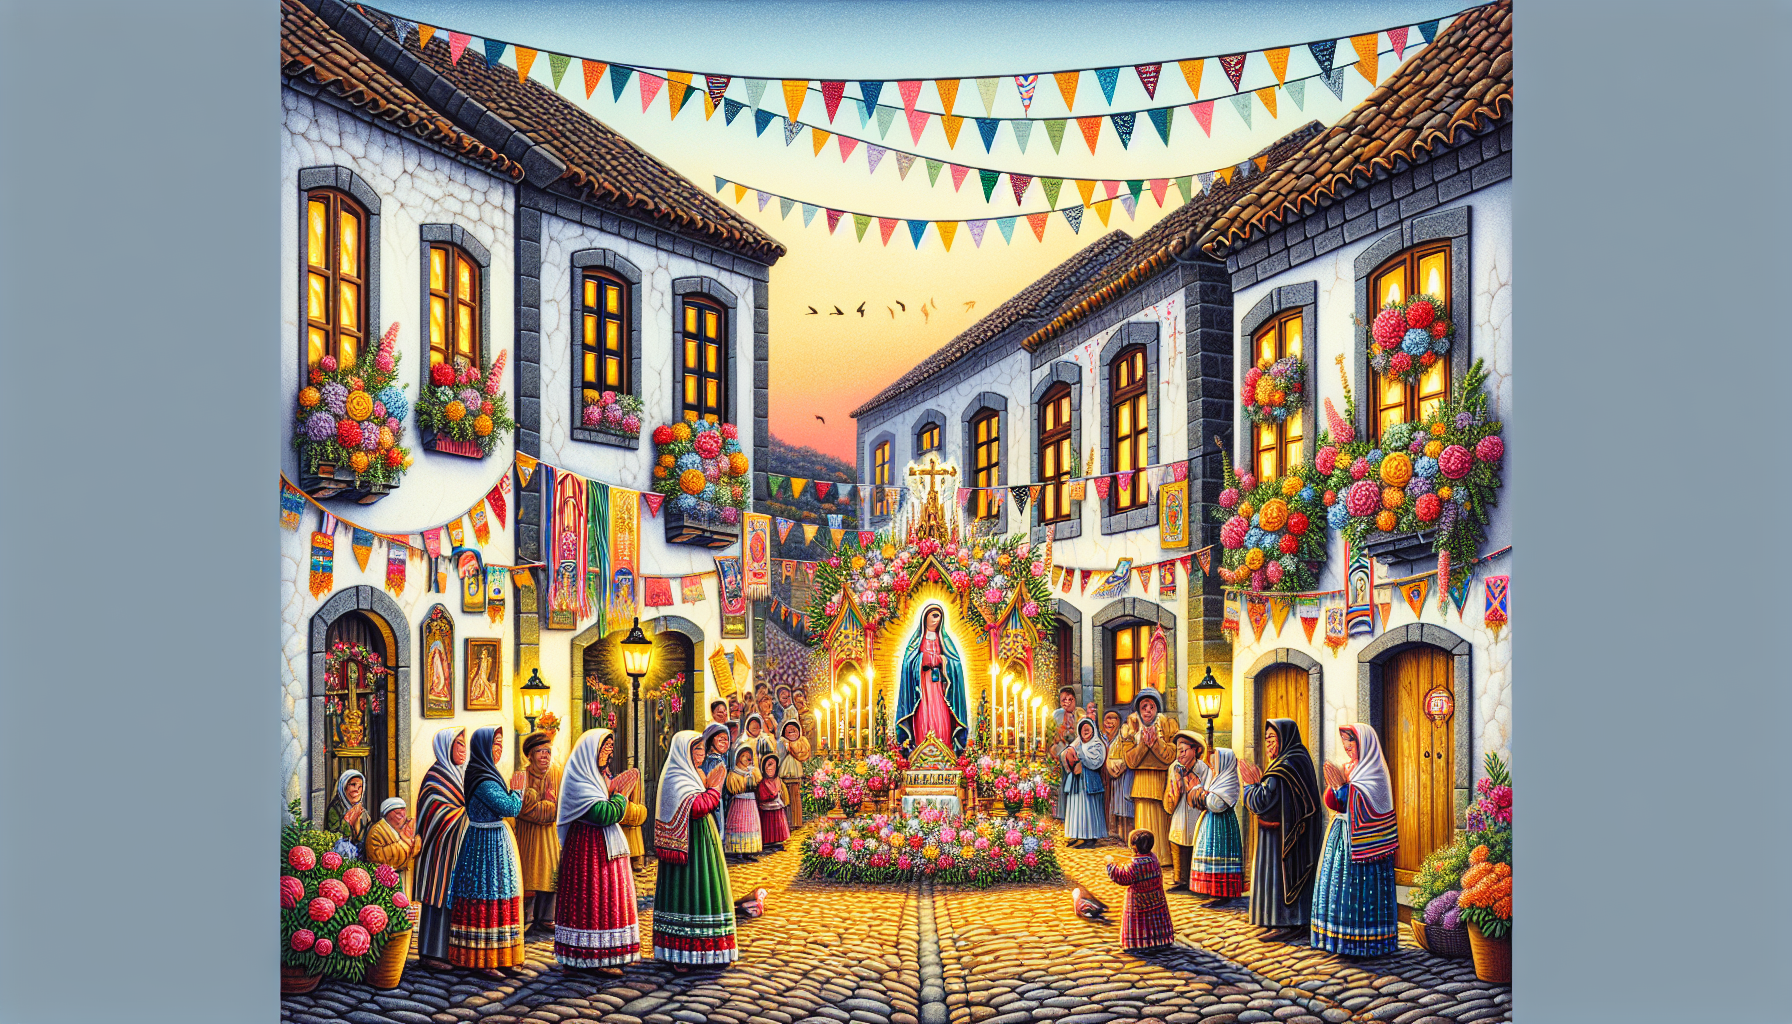 Una escena festiva en un pueblo antiguo con calles empedradas donde la gente celebra la Visitación de la Virgen María. Hay banderines de colores, flores y velas adornando las casas. En una esquina, un